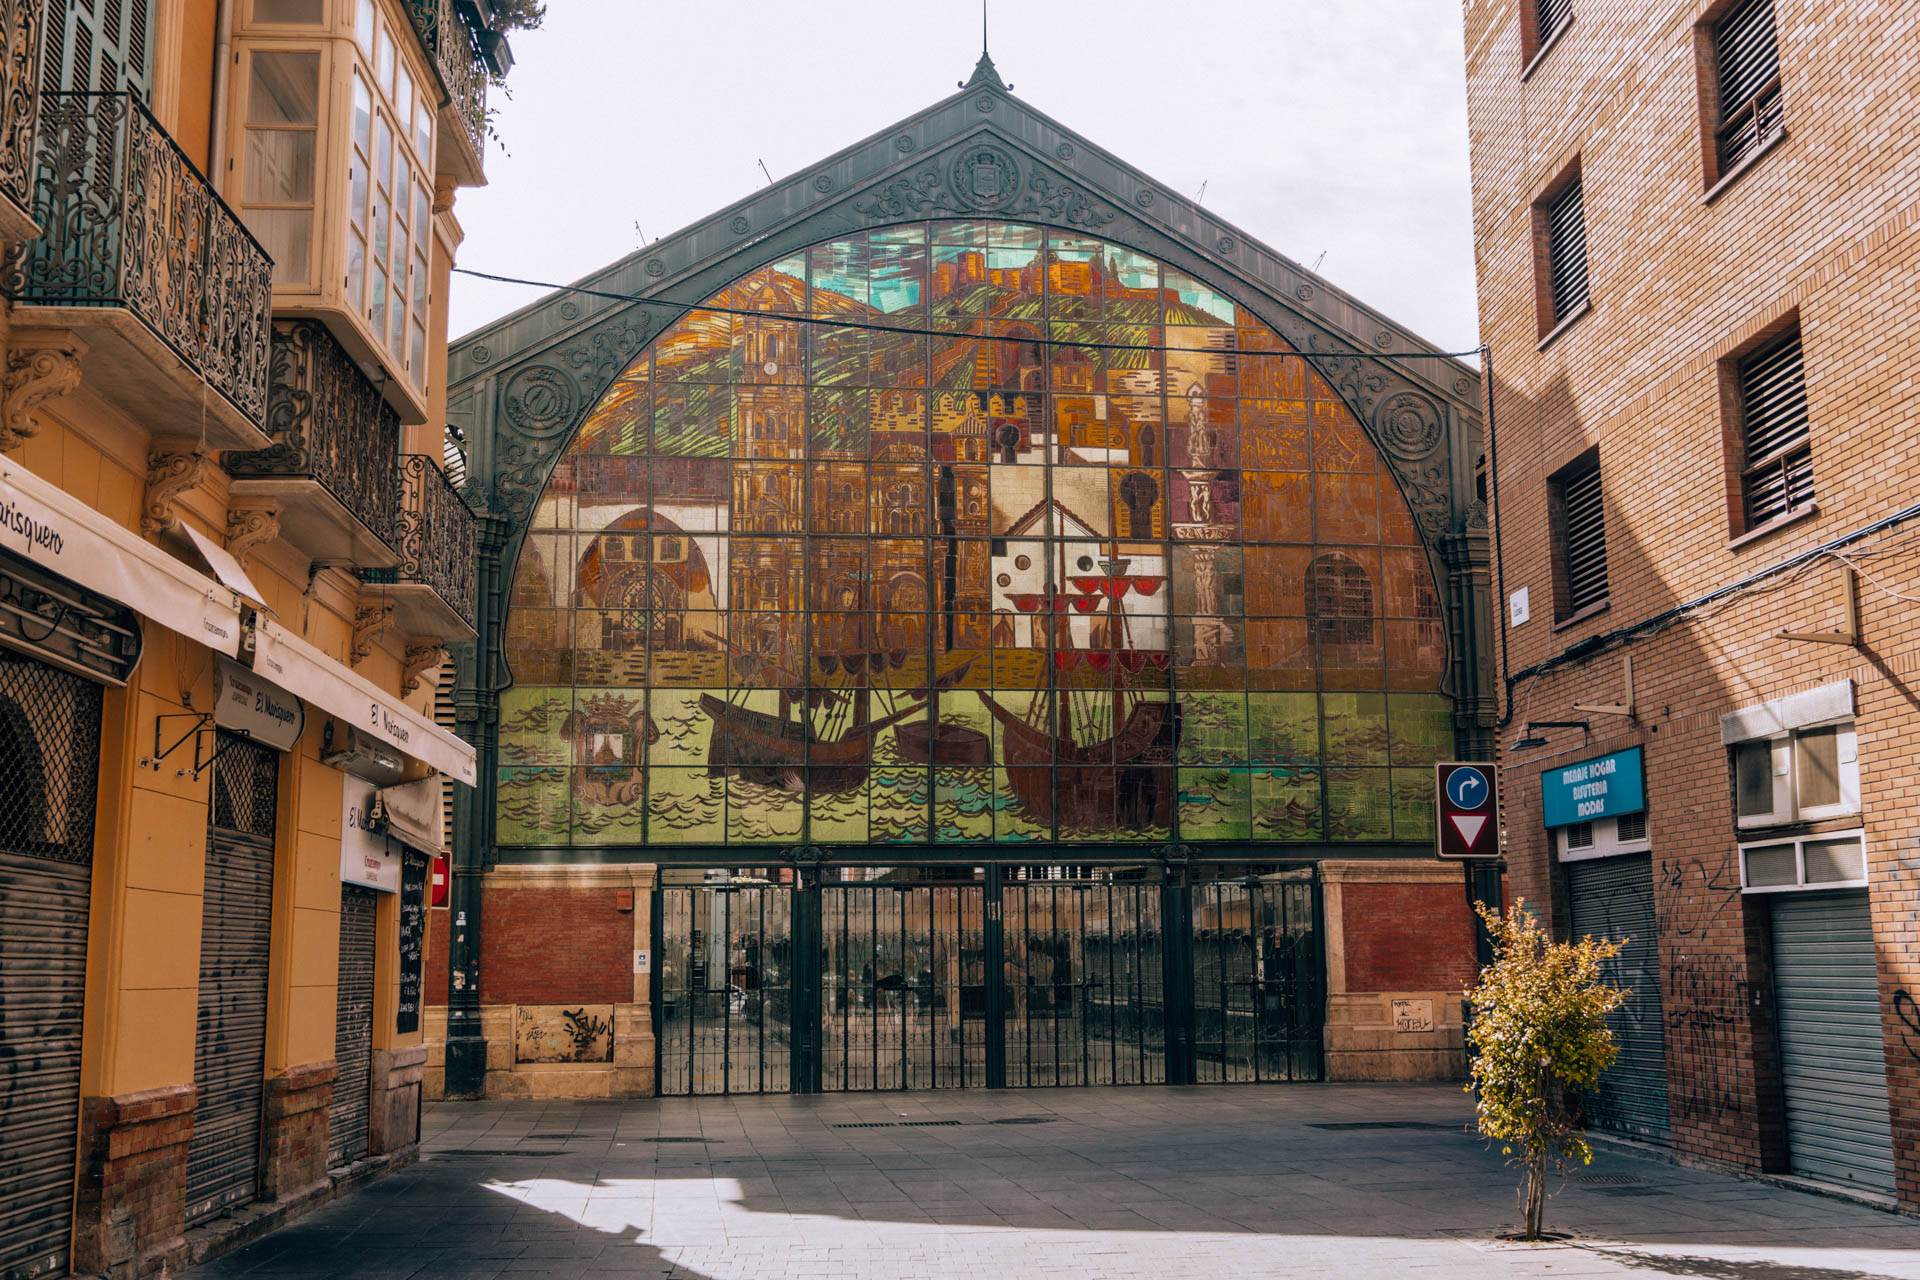 Mercado Central de Atarazanas | Malaga